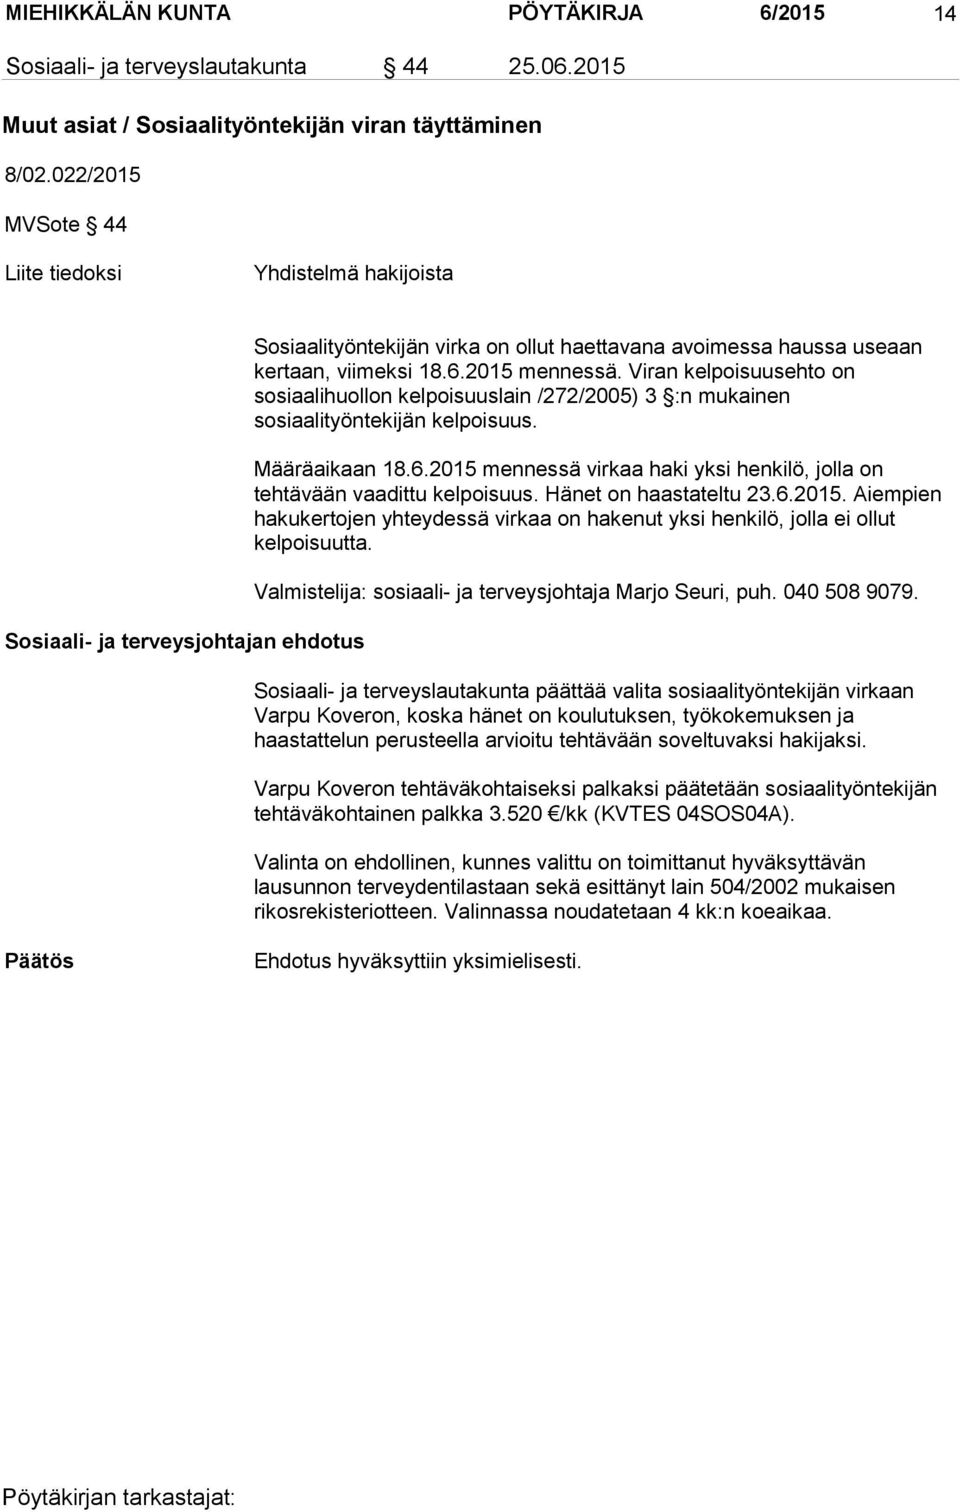 Viran kelpoisuusehto on sosiaalihuollon kelpoisuuslain /272/2005) 3 :n mukainen sosiaalityöntekijän kelpoisuus. Määräaikaan 18.6.